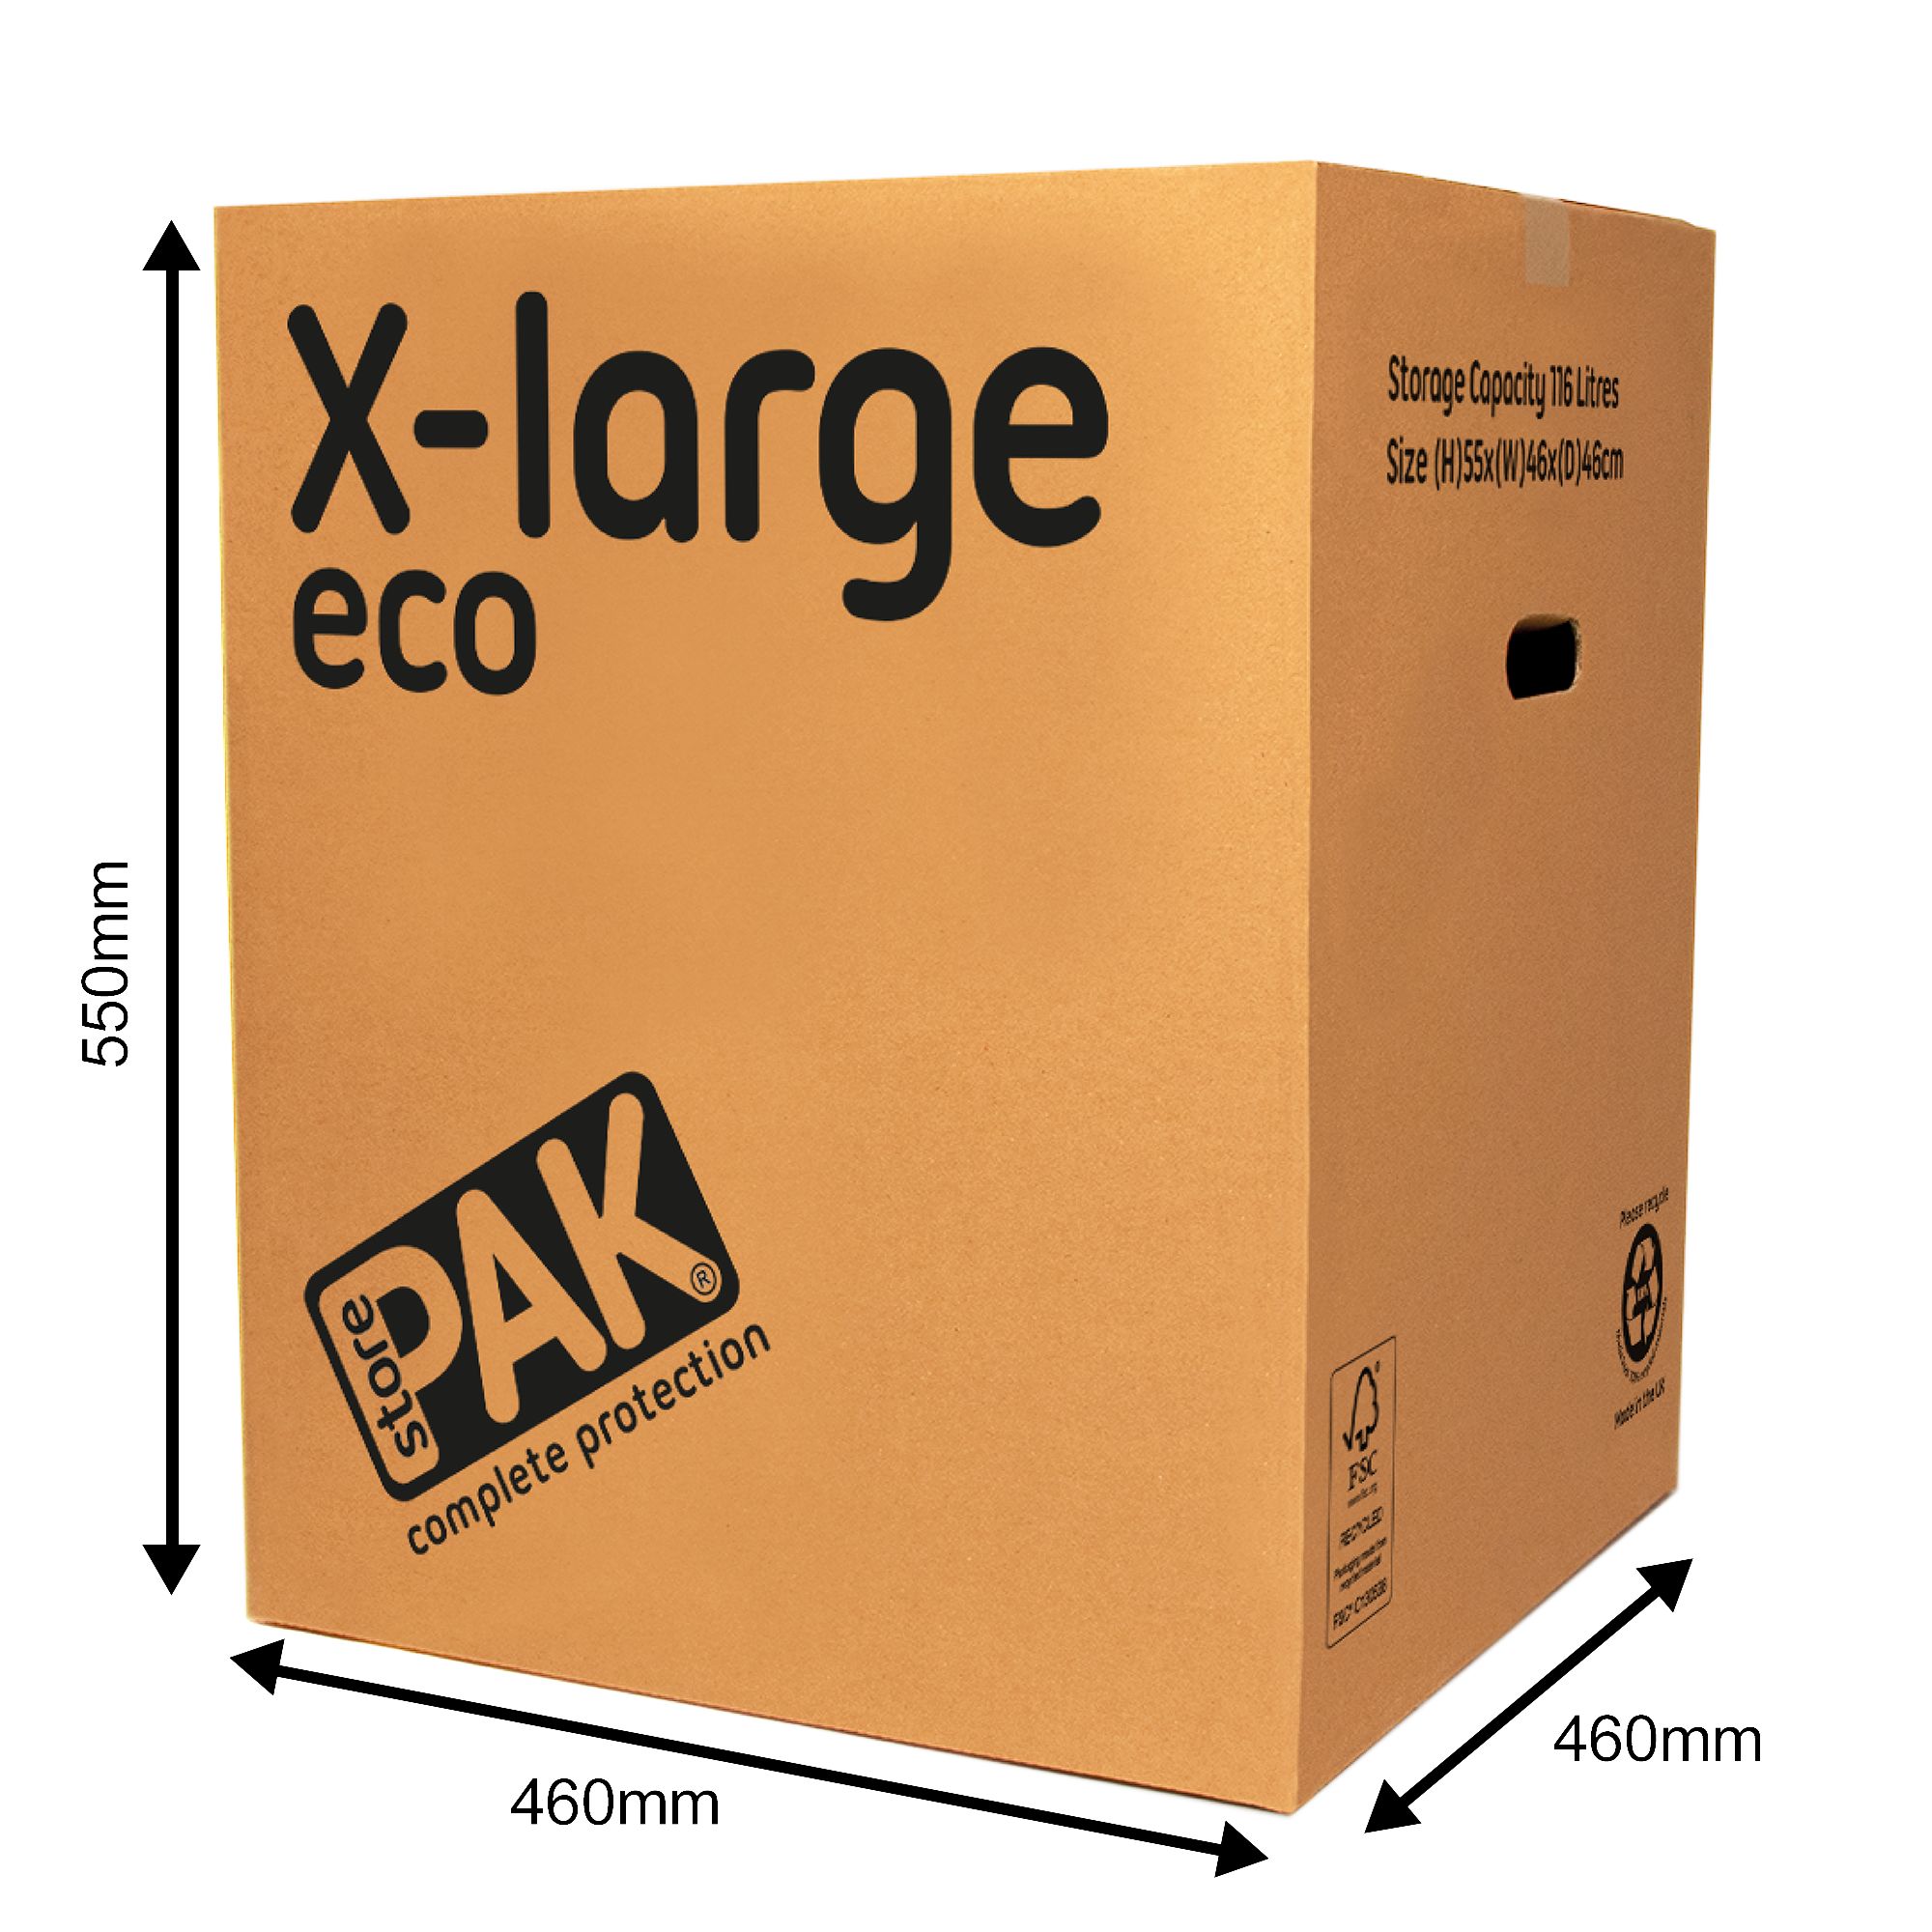 StorePAK Extra large Cardboard Moving box